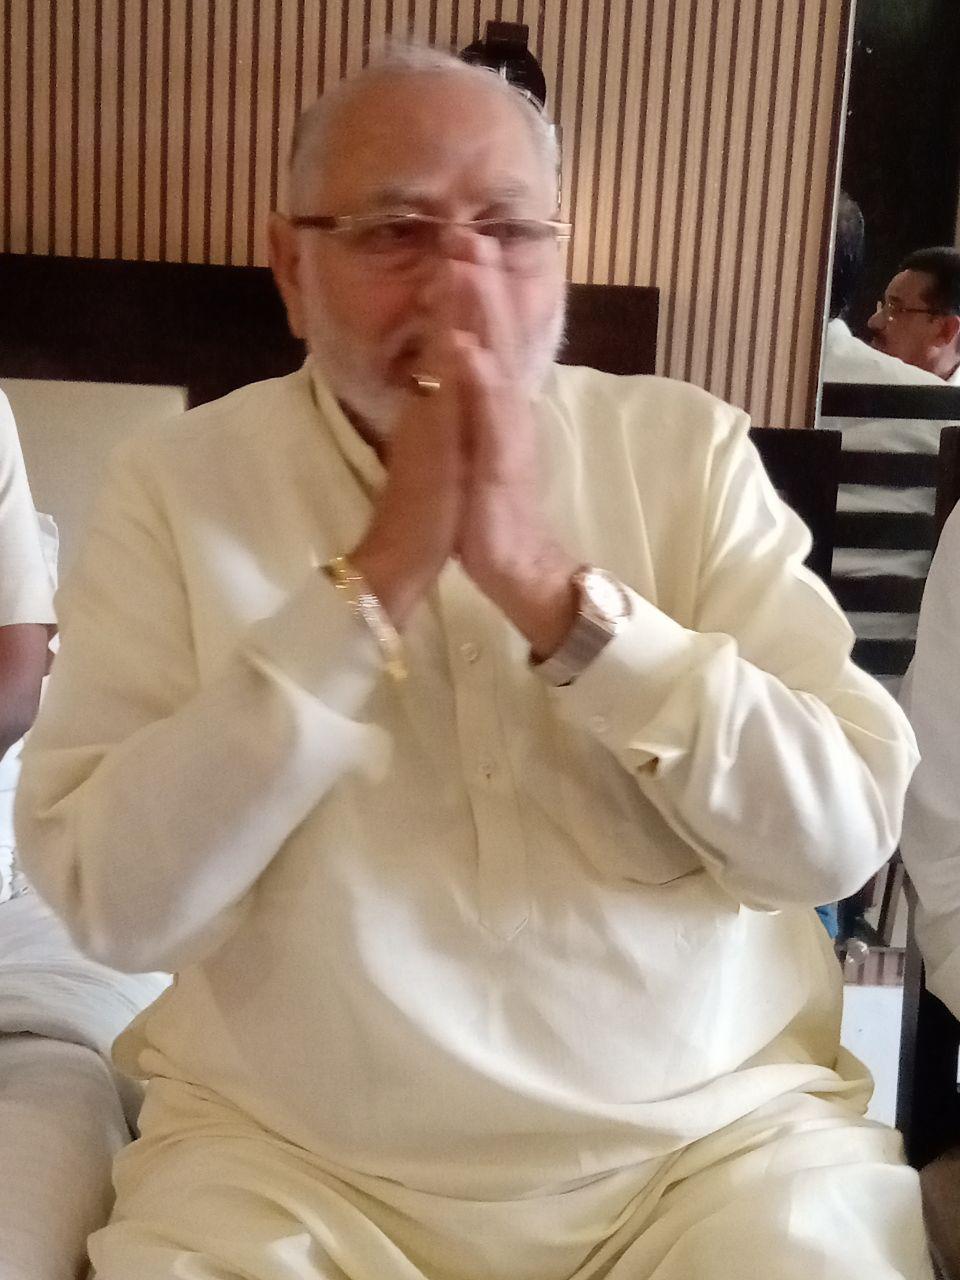 Prime Minister Narendra Modi's brother Prahlad Modi in Bilaspur